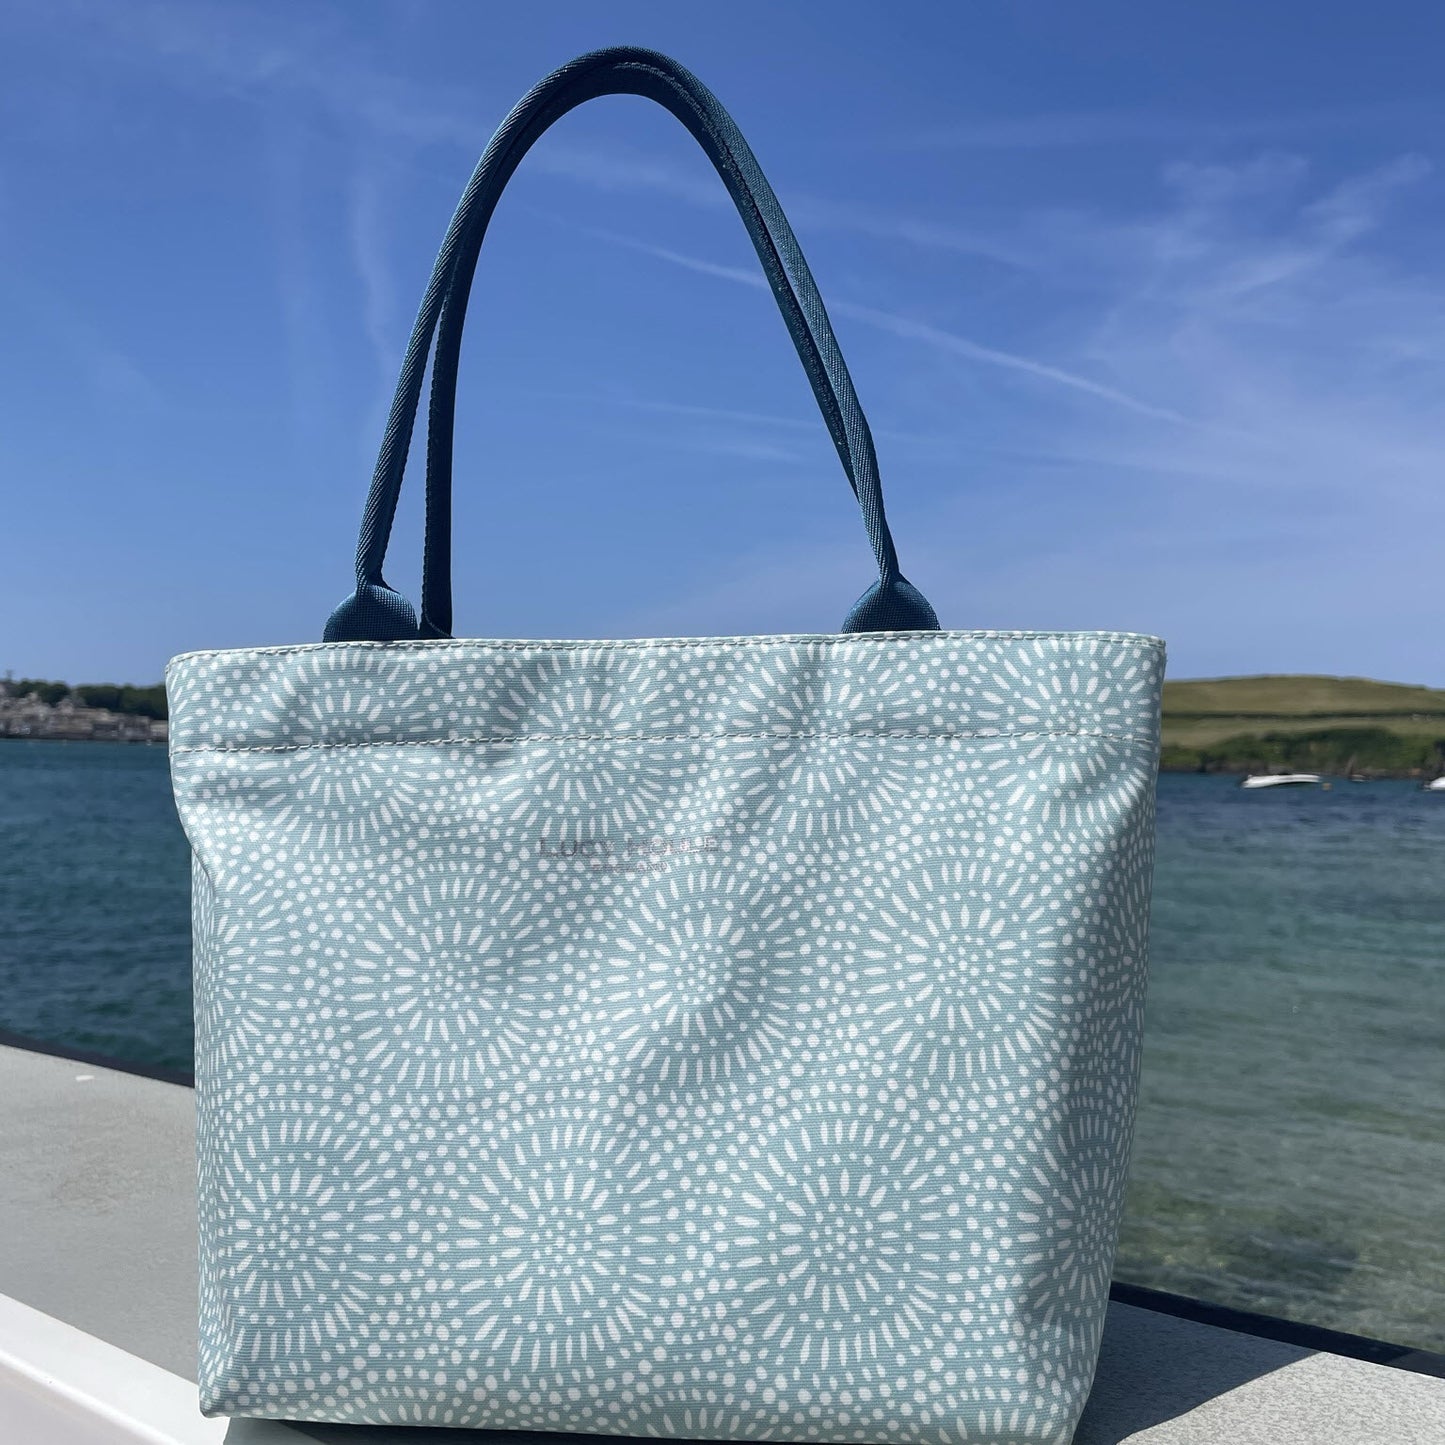 Aqua Sunburst Small Zip Tote Bag with Teal Handles